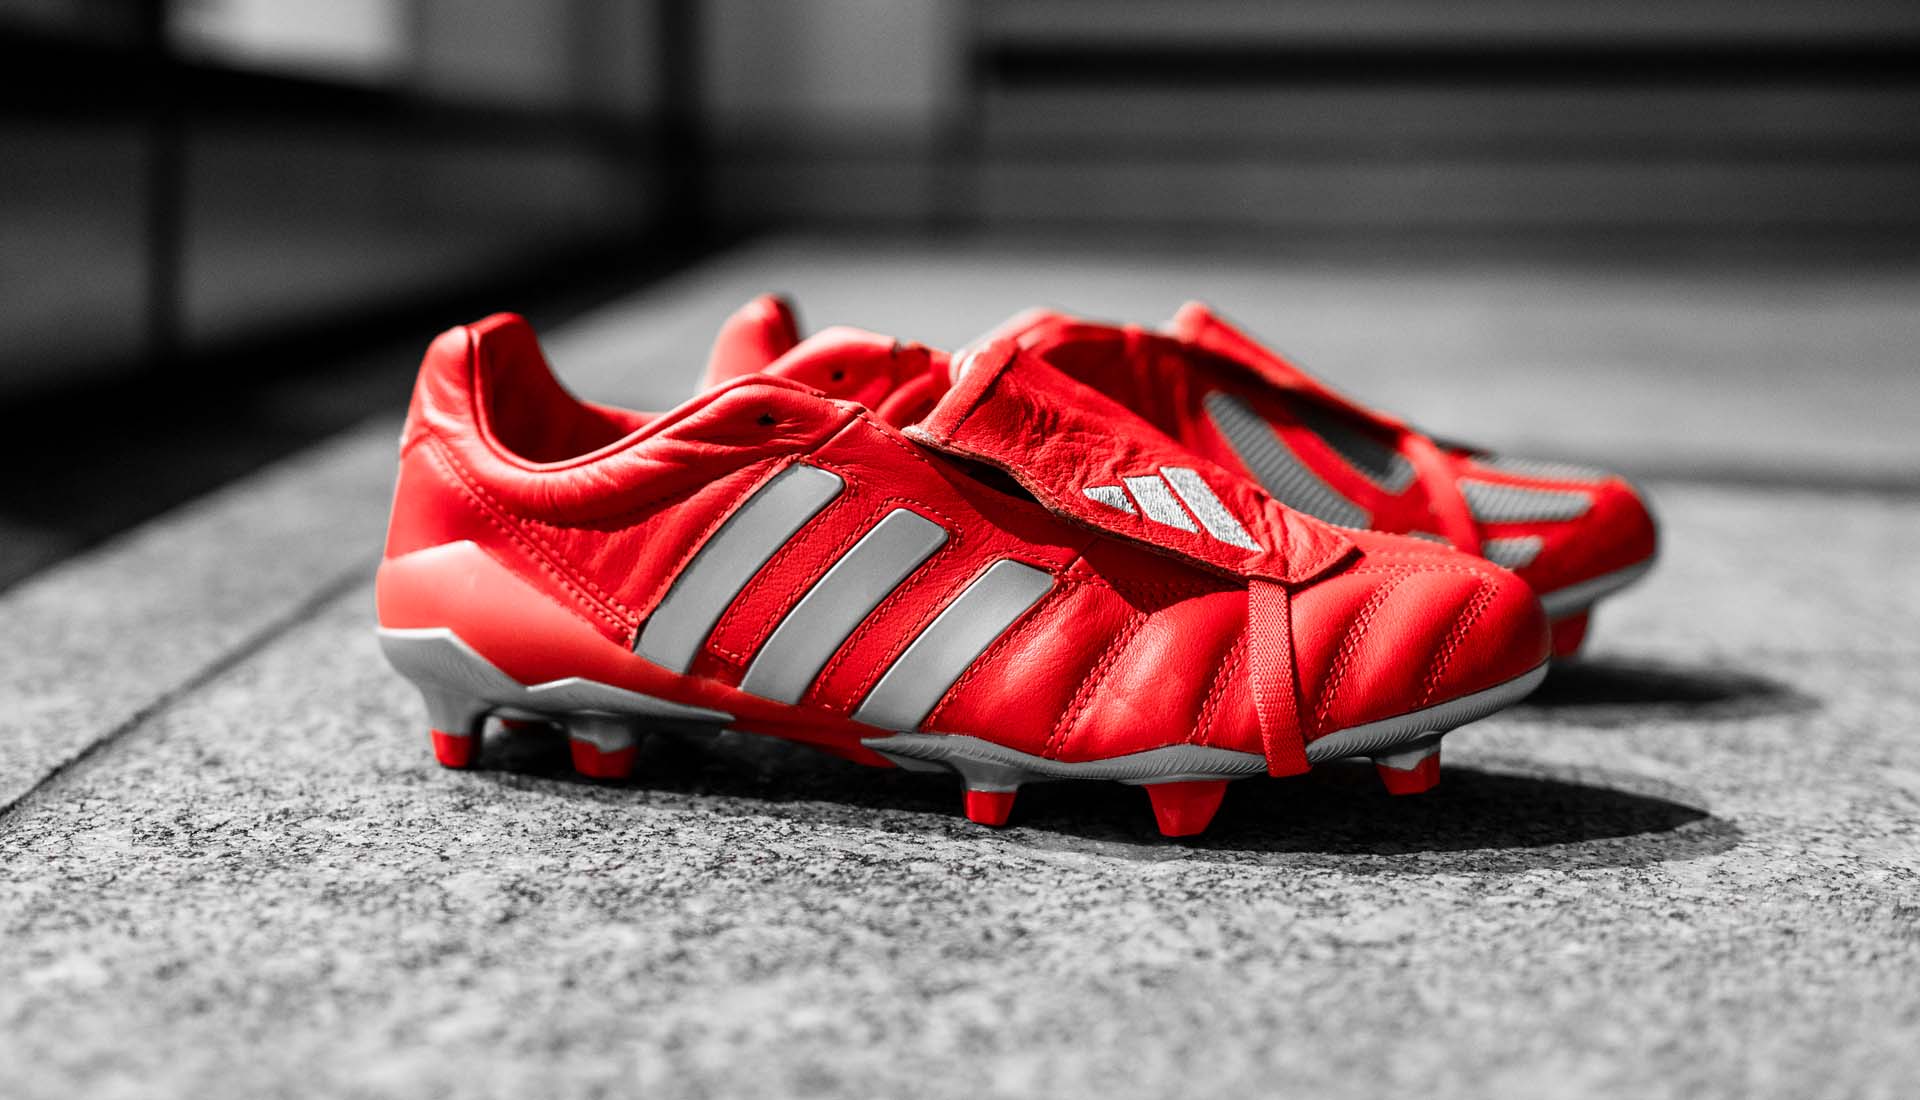 Giày đá banh chính hãng. Giày đá banh Adidas. Adidas Predator Mania "Red/Metallic Silver"